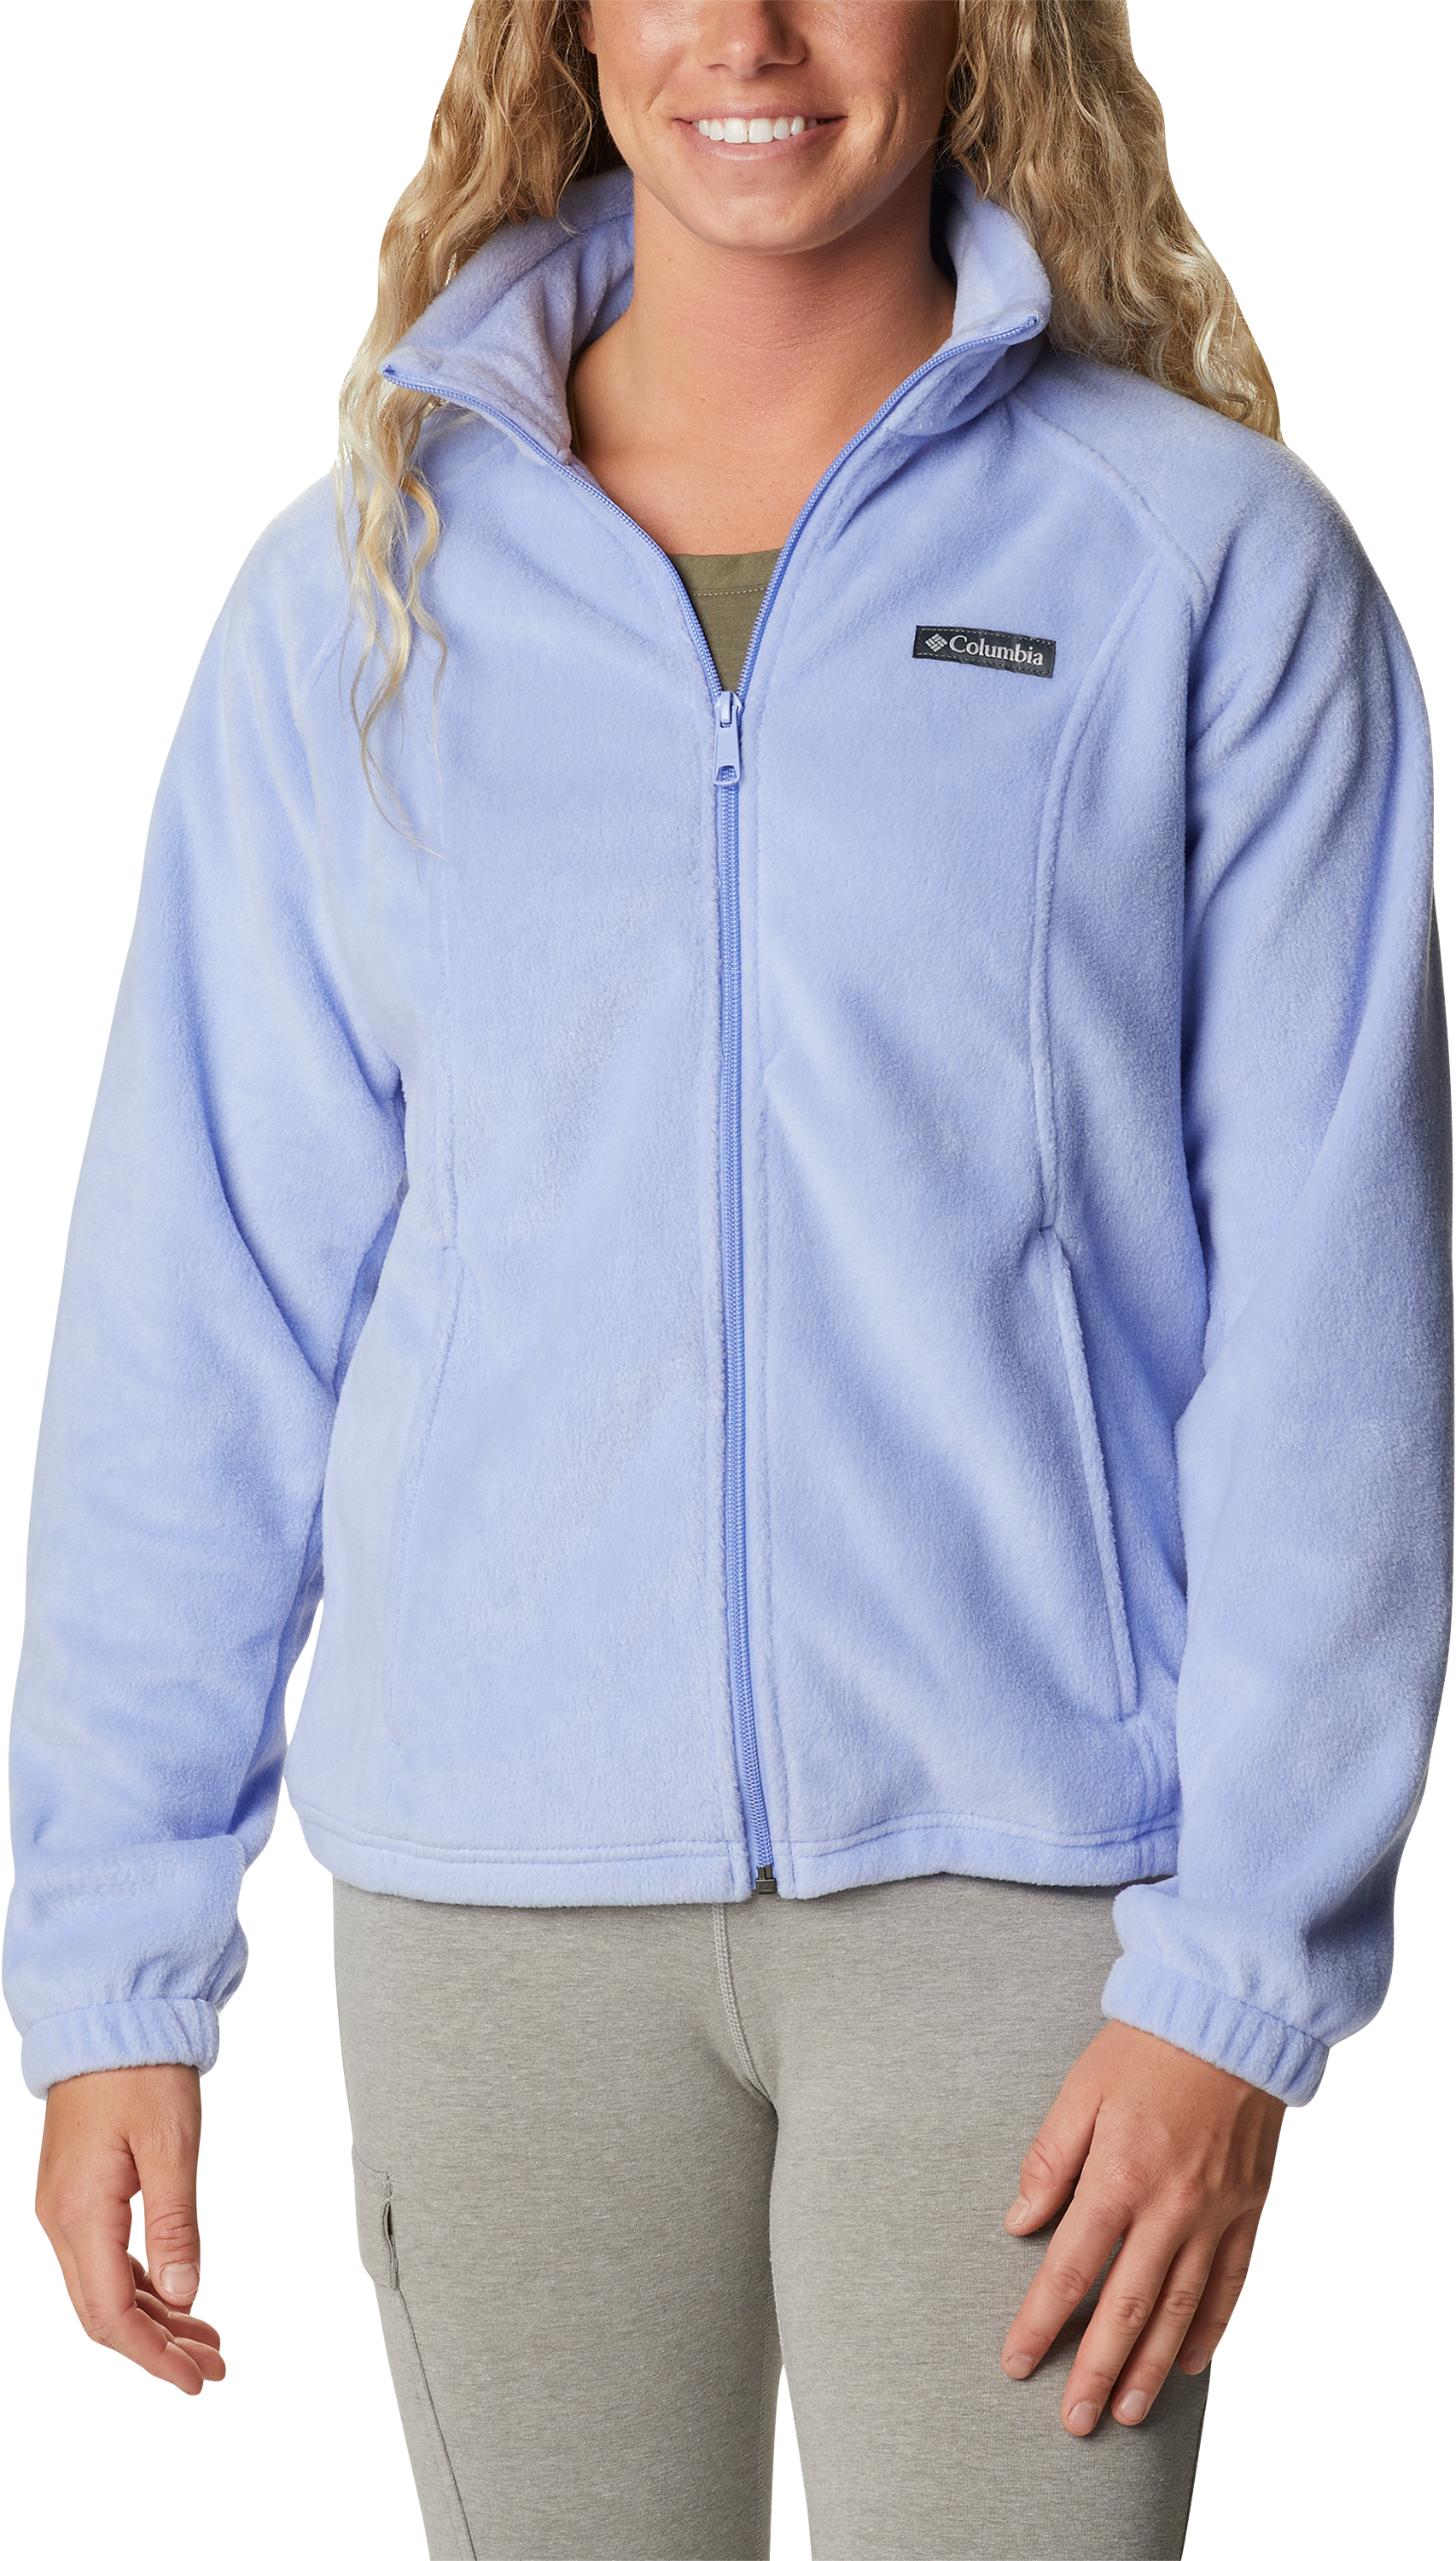 Columbia Benton Springs Full-Zip Fleece Jacket for Ladies - Serenity - XL